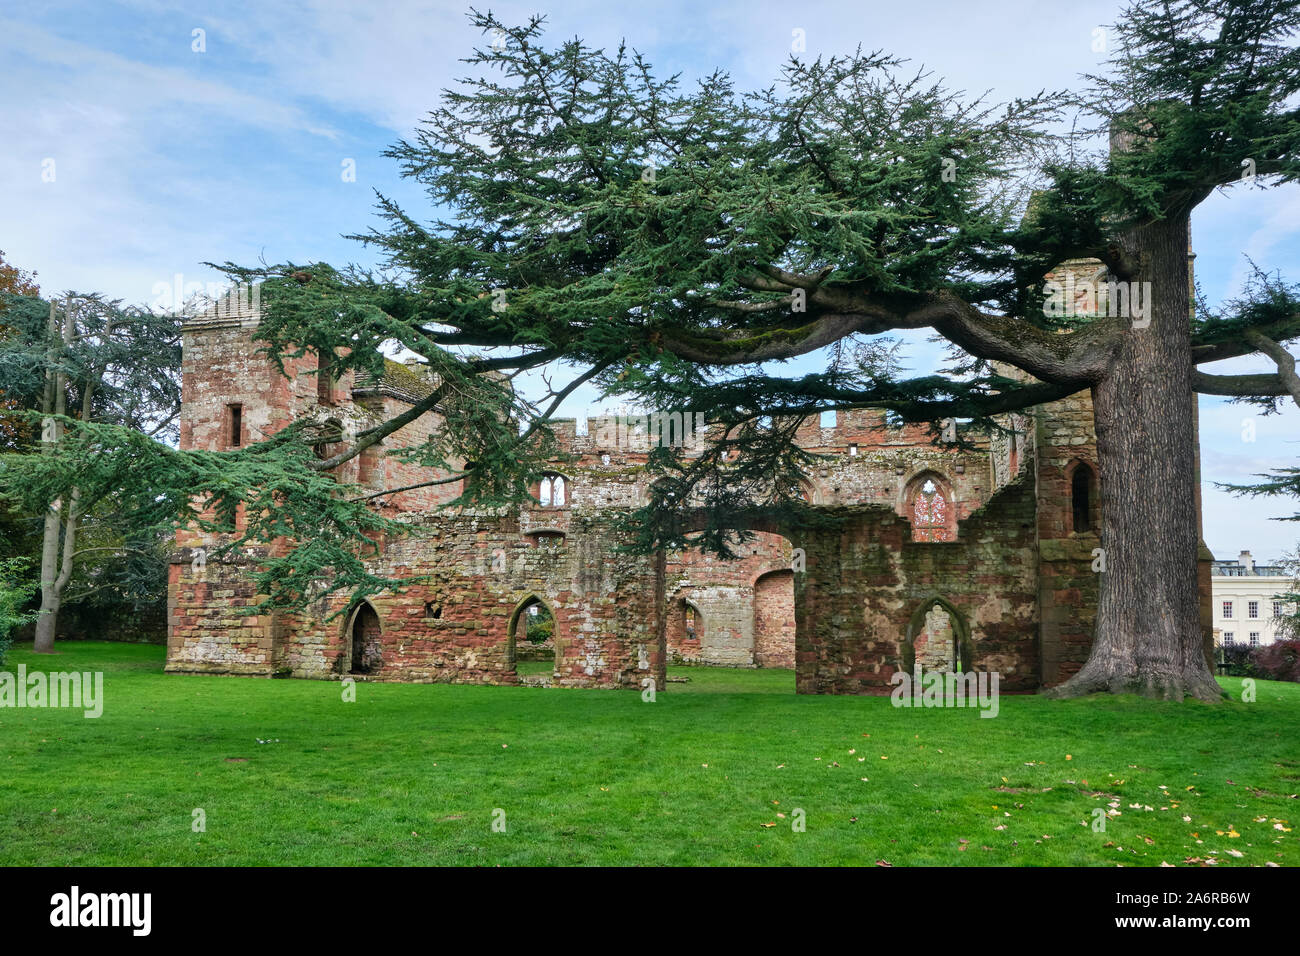 Un grand cèdre du Liban Cedrus libani arbre poussant dans les terrains de l'Acton Burnell château en ruine, un manoir fortifié du 13ème siècle dans le Shropshire Banque D'Images